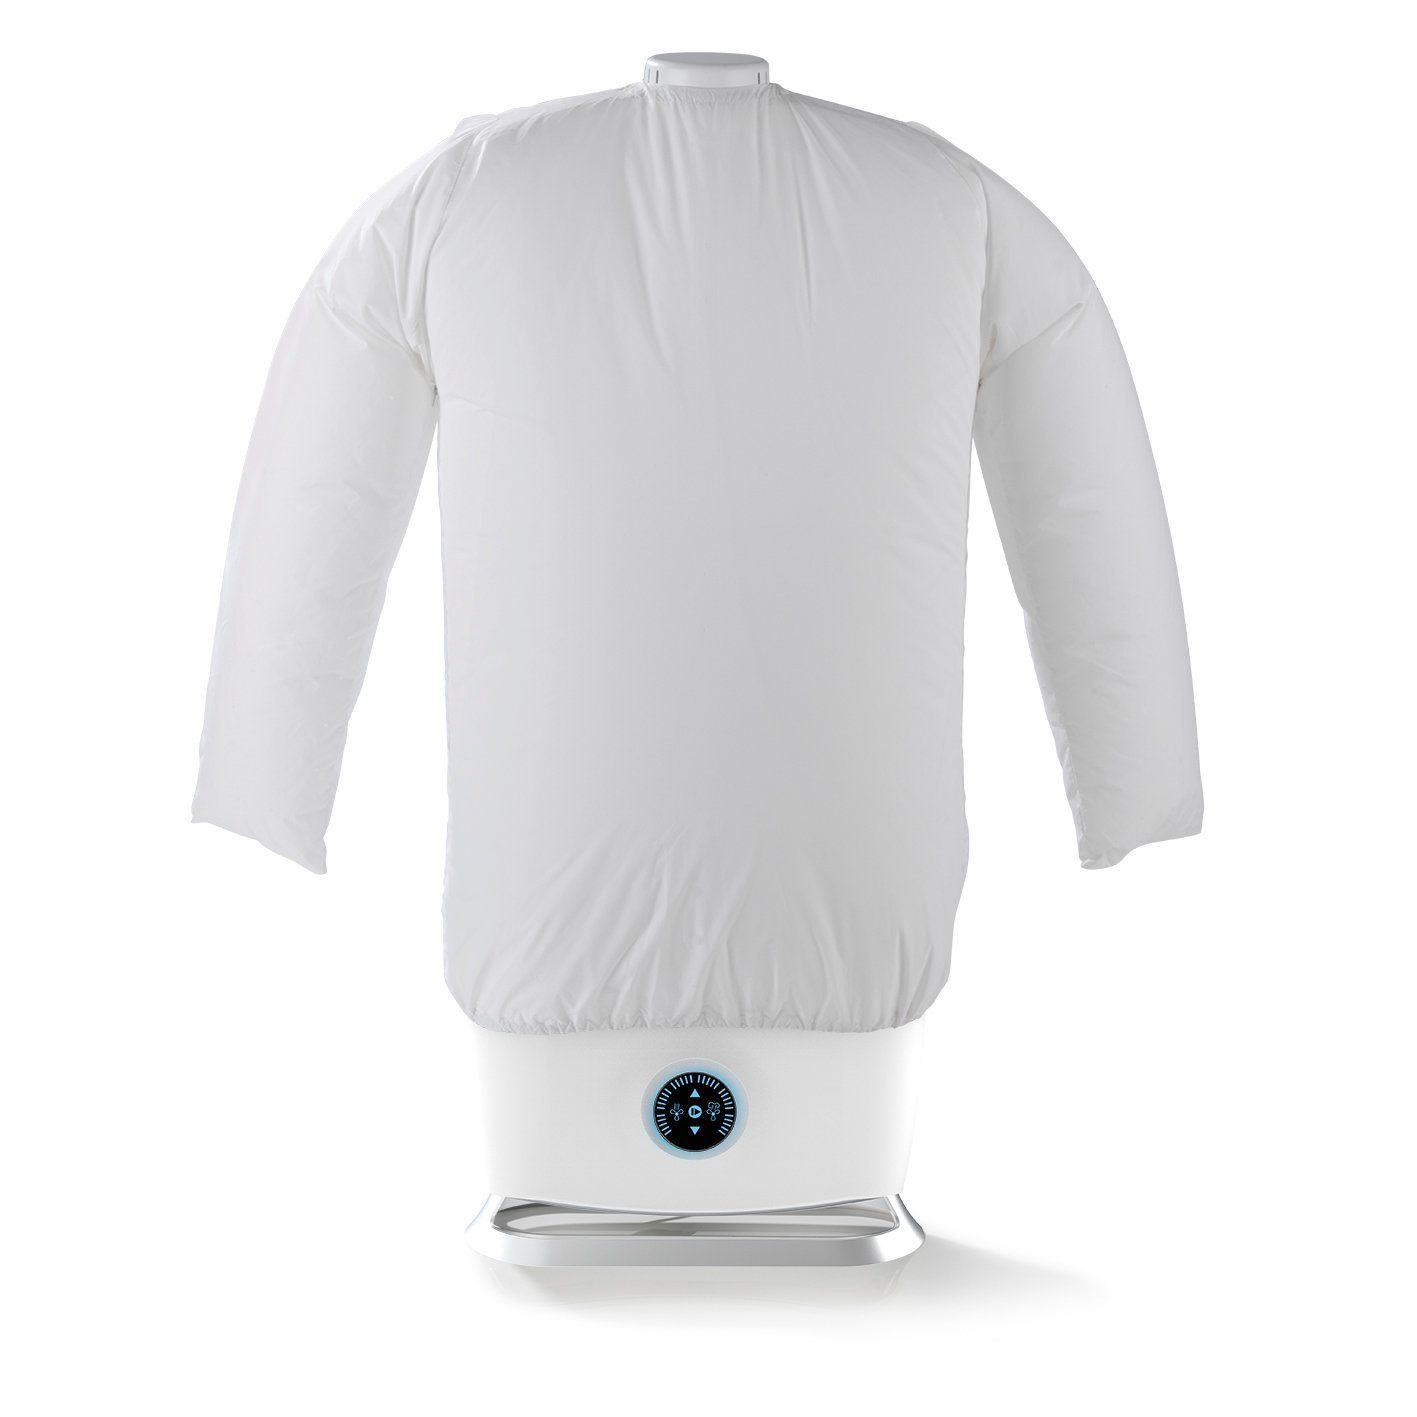 CLEANmaxx Bügelsystem Dampfbügler Bügelstation 1800 Hemden für Blusen & W, Bügeleisen weiß/silber